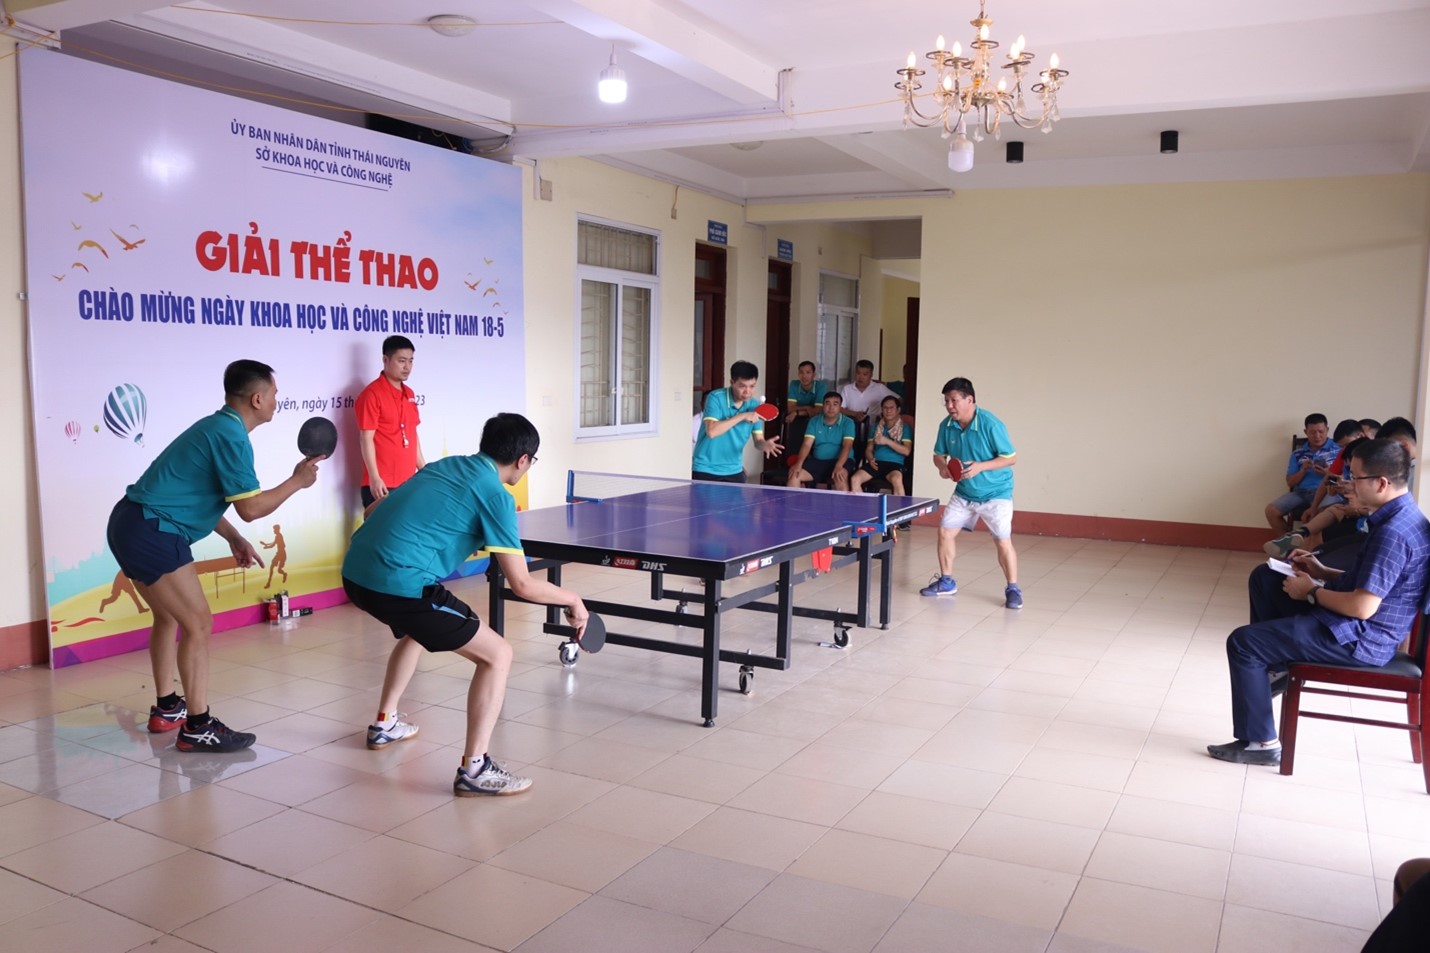 Giải thể thao chào mừng Ngày Khoa học và Công nghệ Việt Nam 18-5 -1